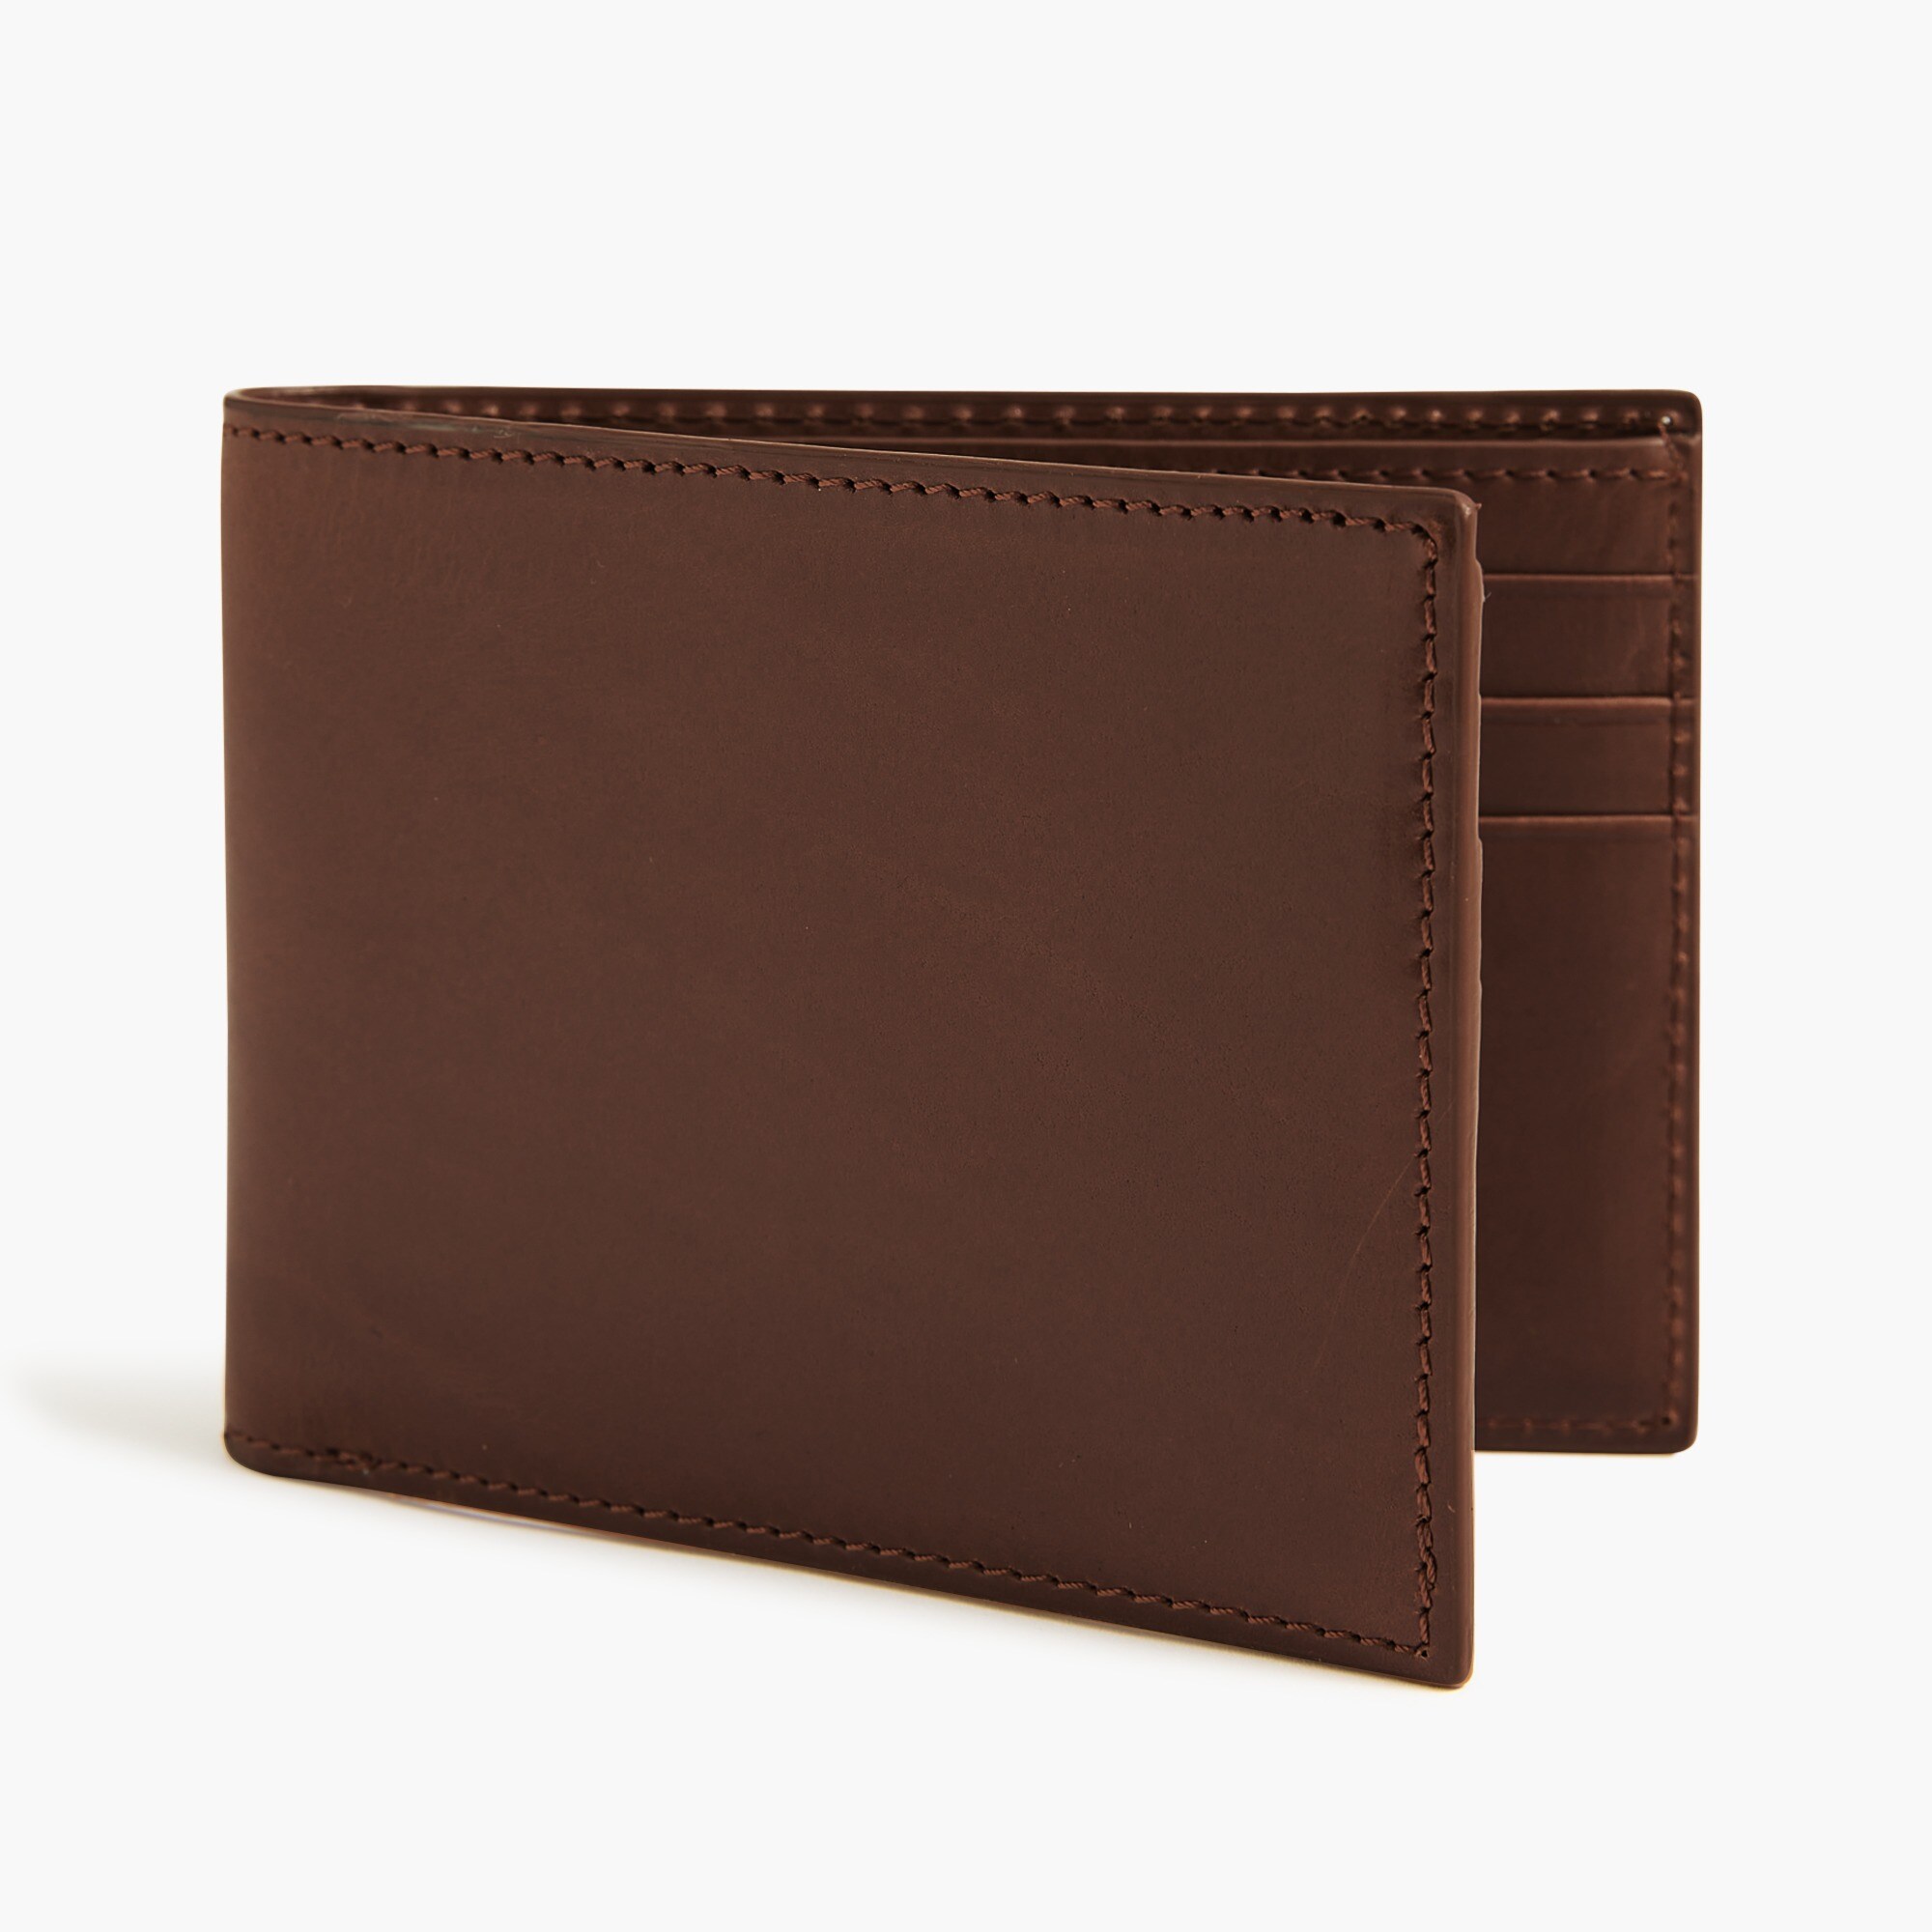  Leather billfold wallet